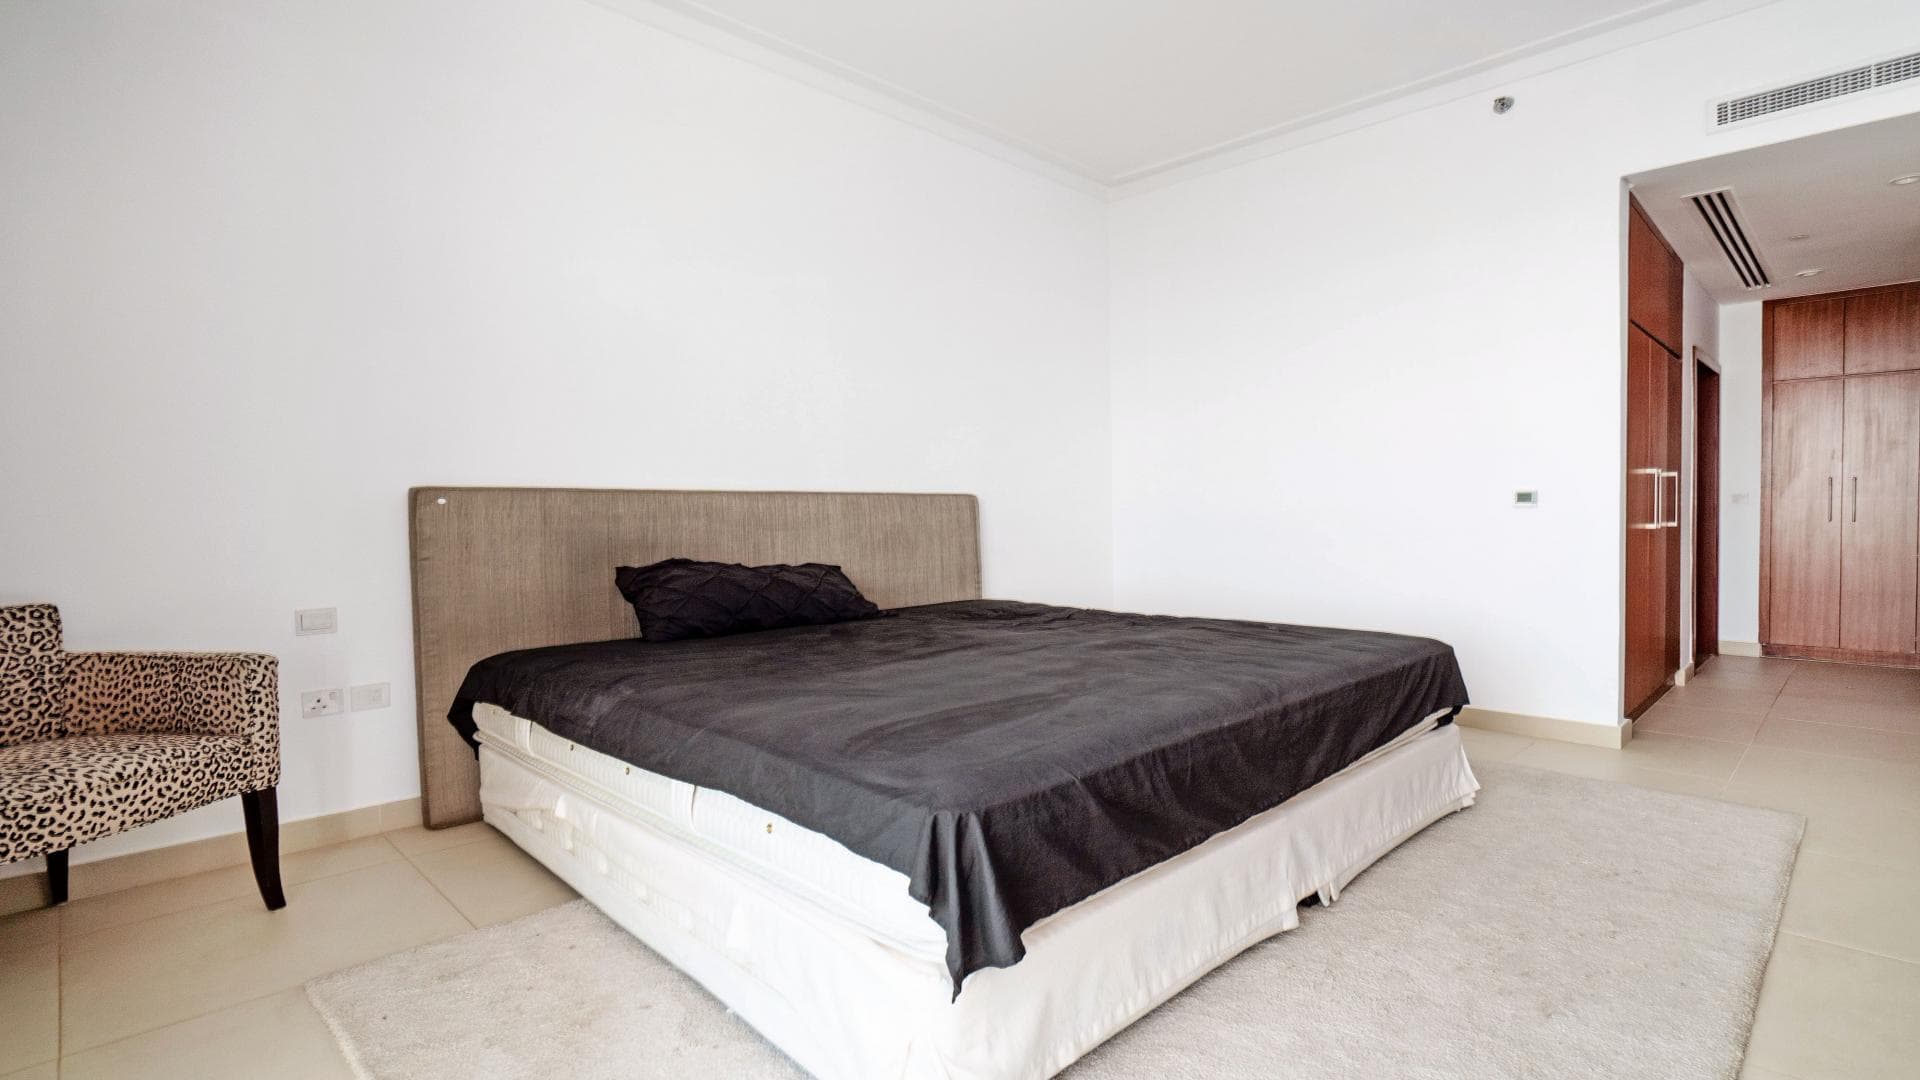 4 Bedroom Apartment For Rent Vida Residence Lp19009 2f9e31092bf98e00.jpg